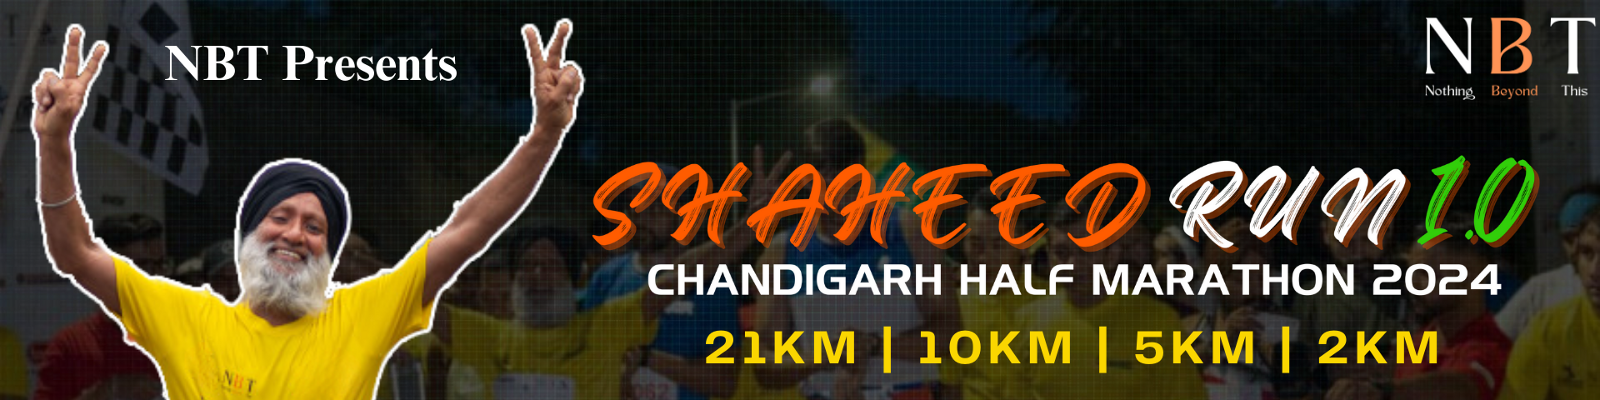 Nbt Shaheed Run - Chandigarh Half Marathon